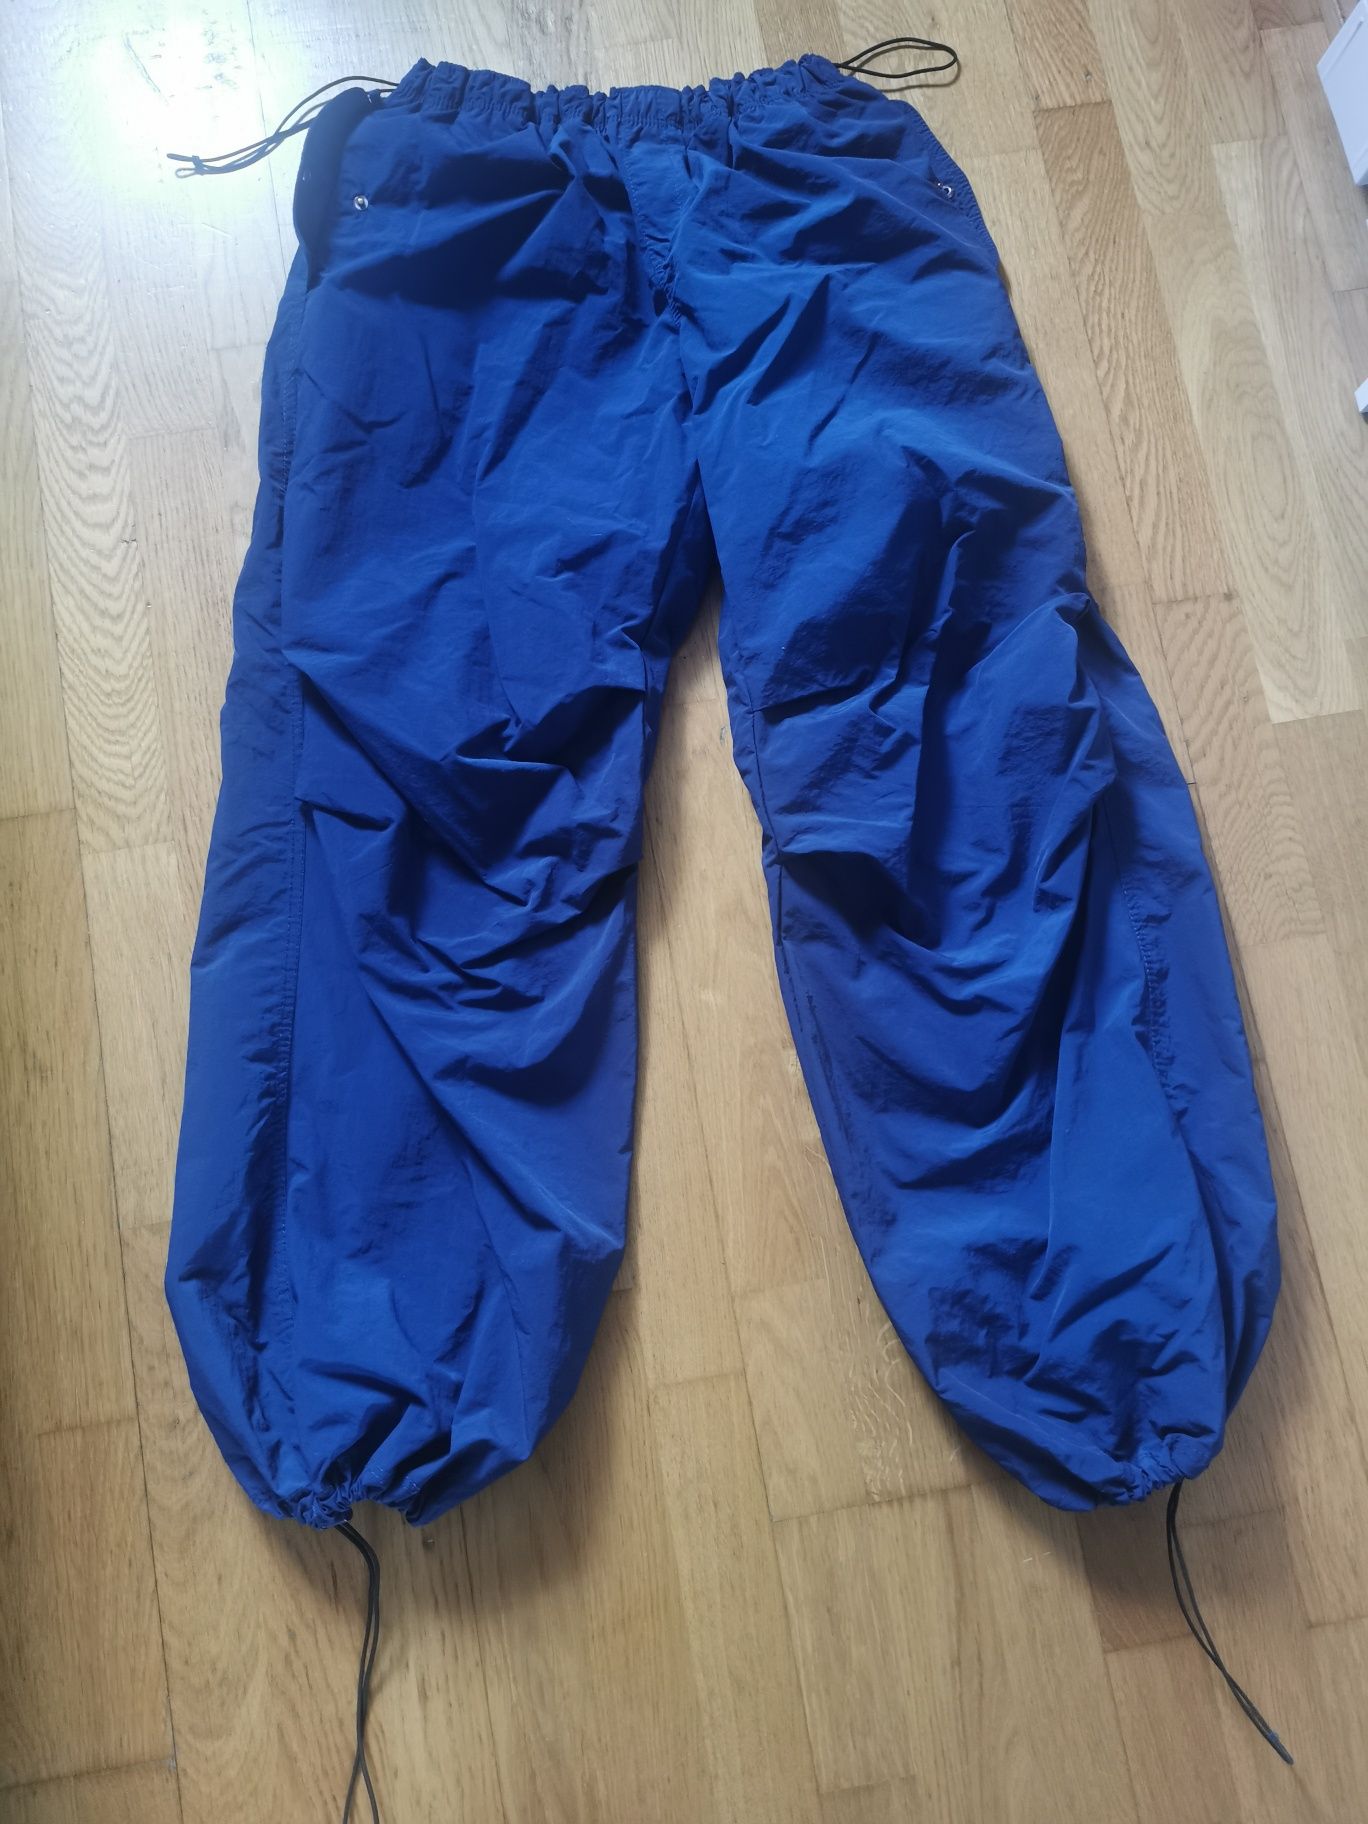 Spodnie spadochronowe xl